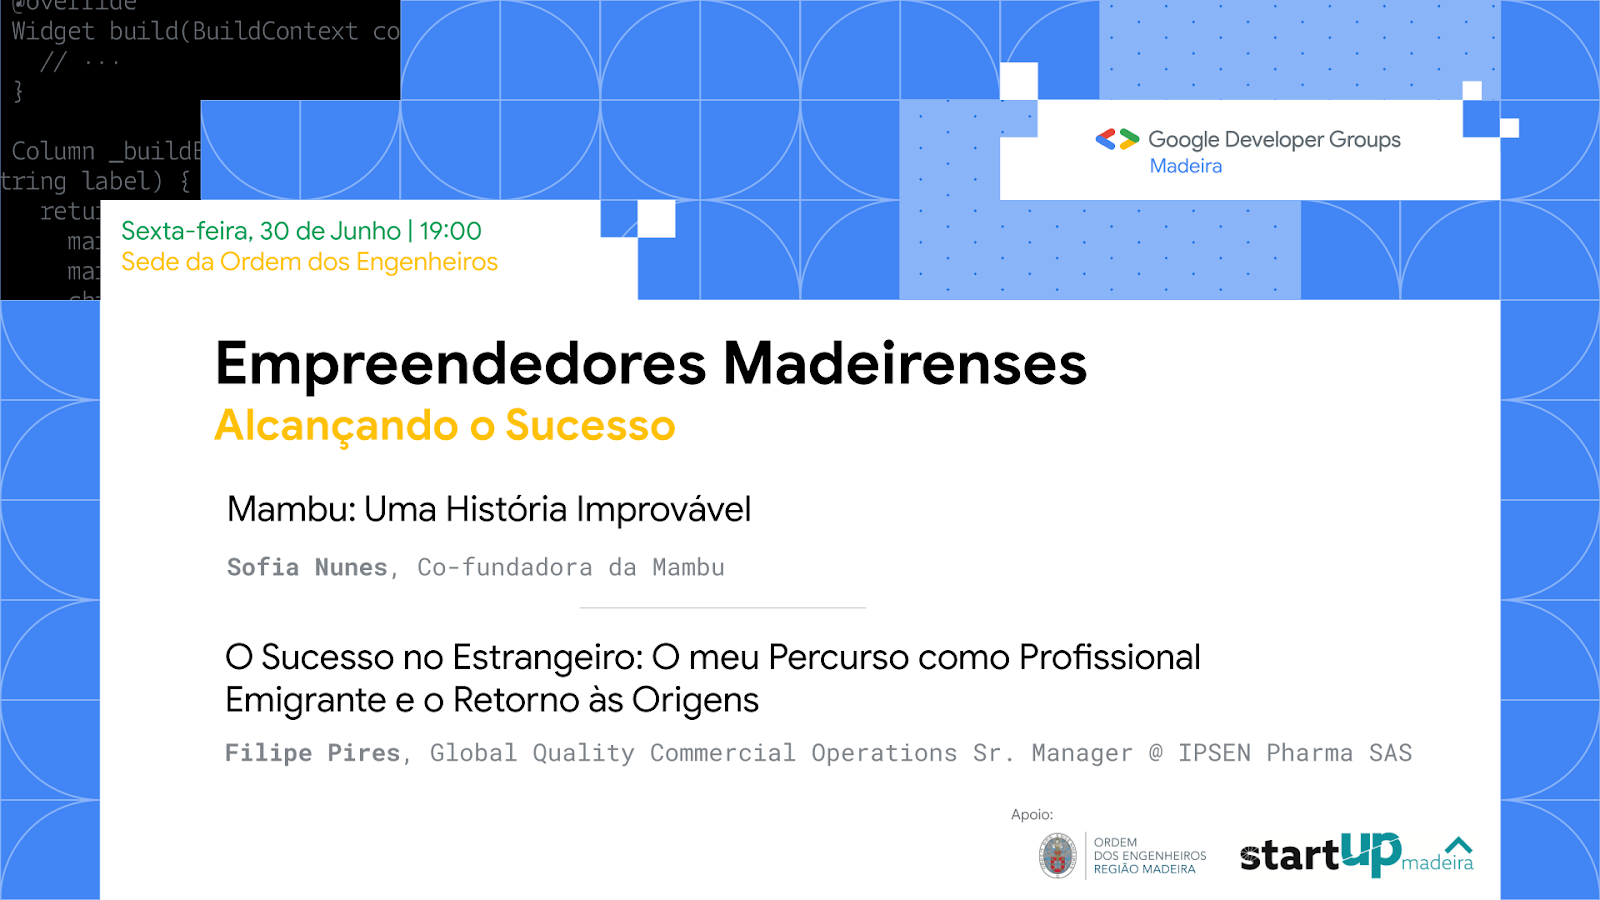 Empreendedores Madeirenses - Alcançando o Sucesso